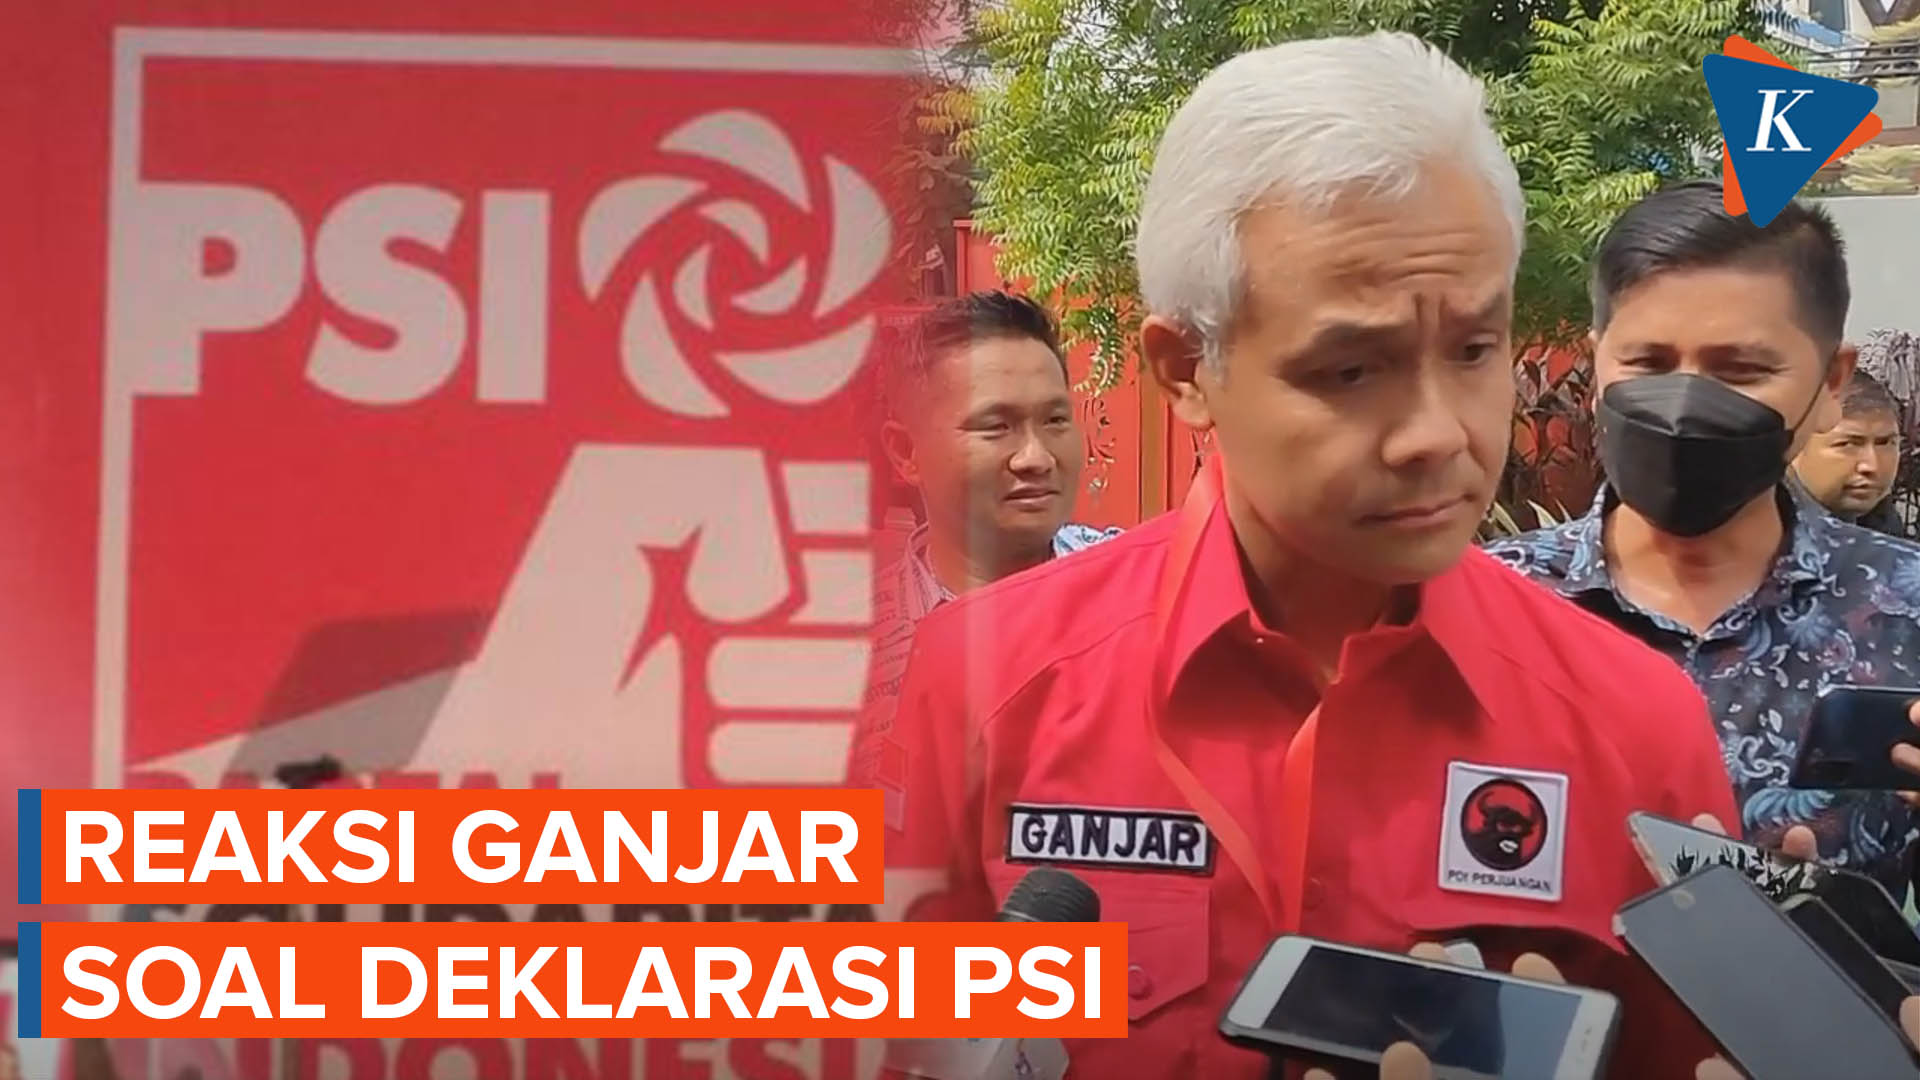 Ganjar Pranowo Baru Tahu soal Deklarasi PSI dari Media